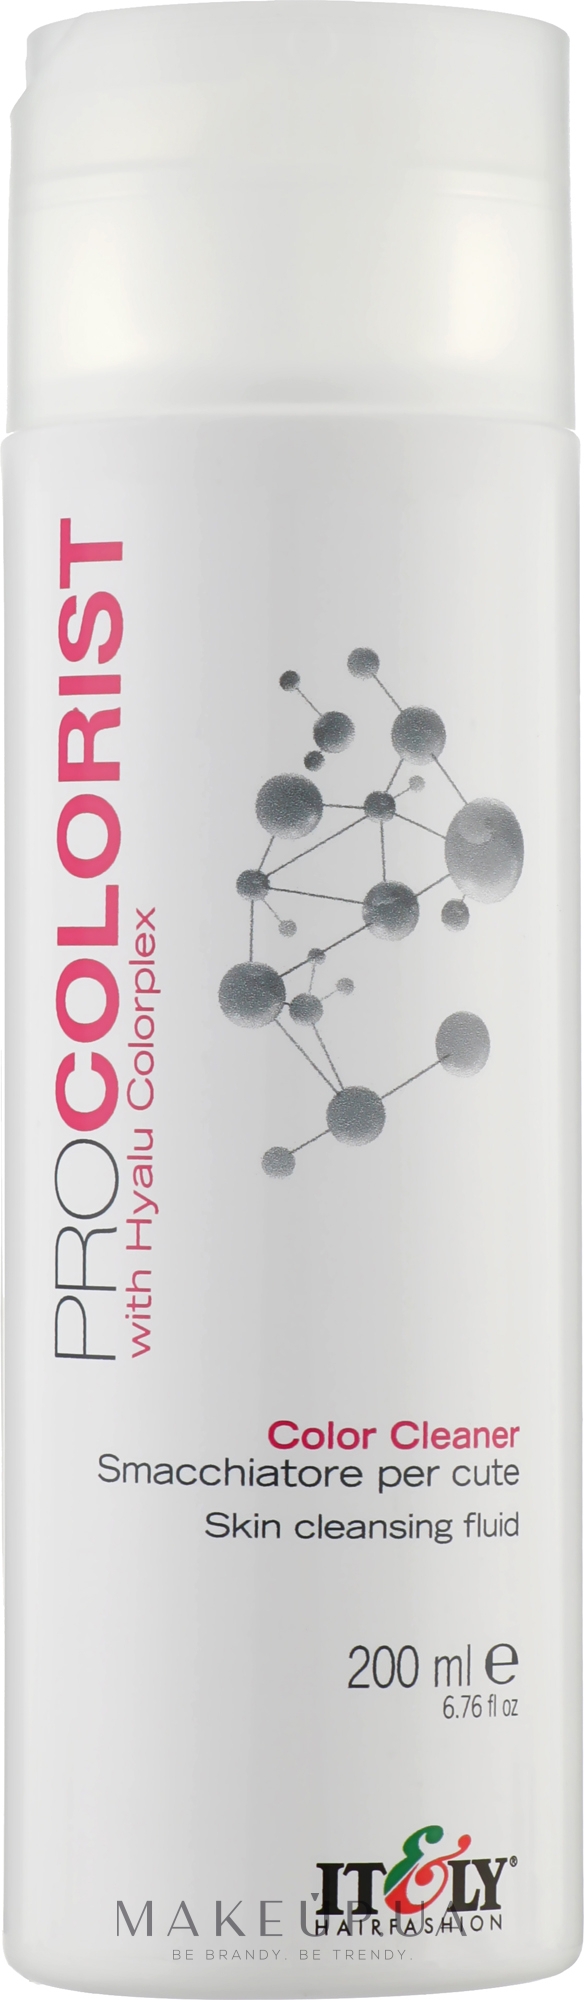 Флюид-ремувер для удаления краски и уменьшения раздражения - Itely Hairfashion Pro Colorist  — фото 200ml